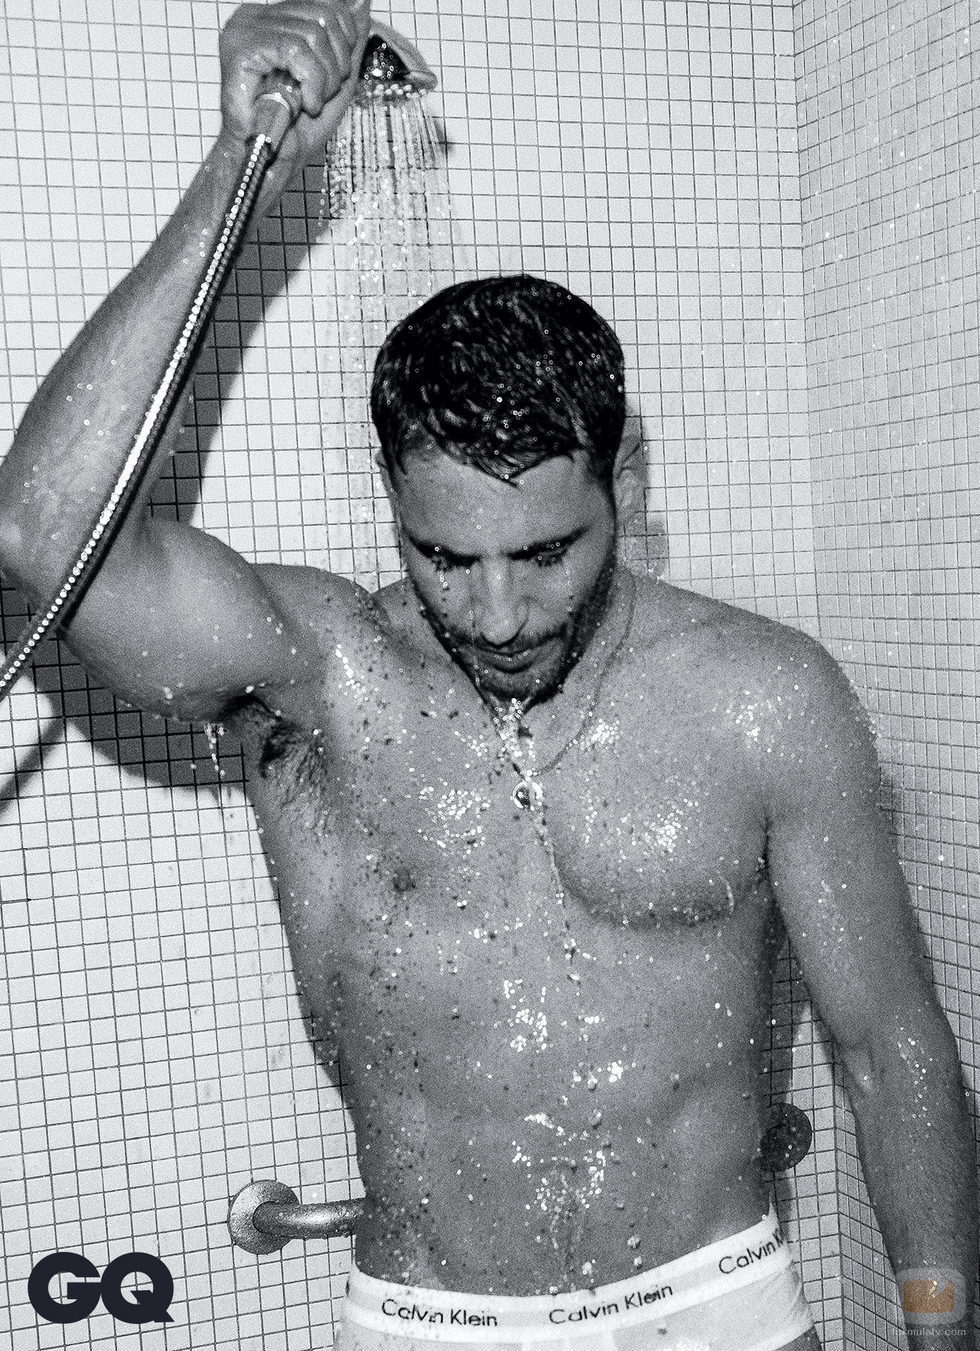 MIguel Ángel luce cuerpo en la ducha para un reportaje de GQ México